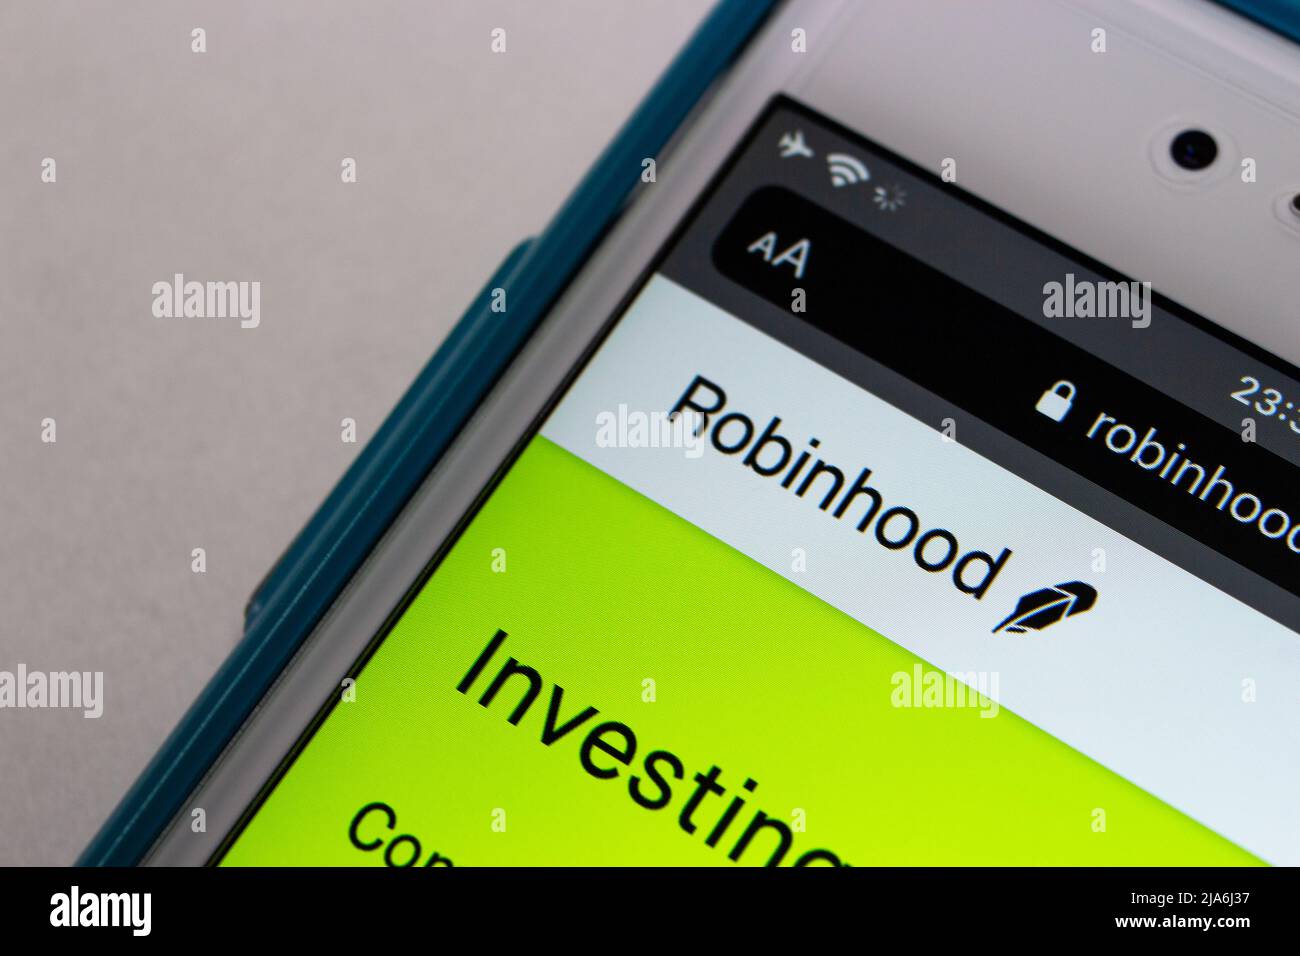 Kumamoto, JAPON - Jan 31 2021 : logo Robinhood sur iPhone. Robinhood est une société financière américaine connue pour offrir des échanges de bourse Banque D'Images